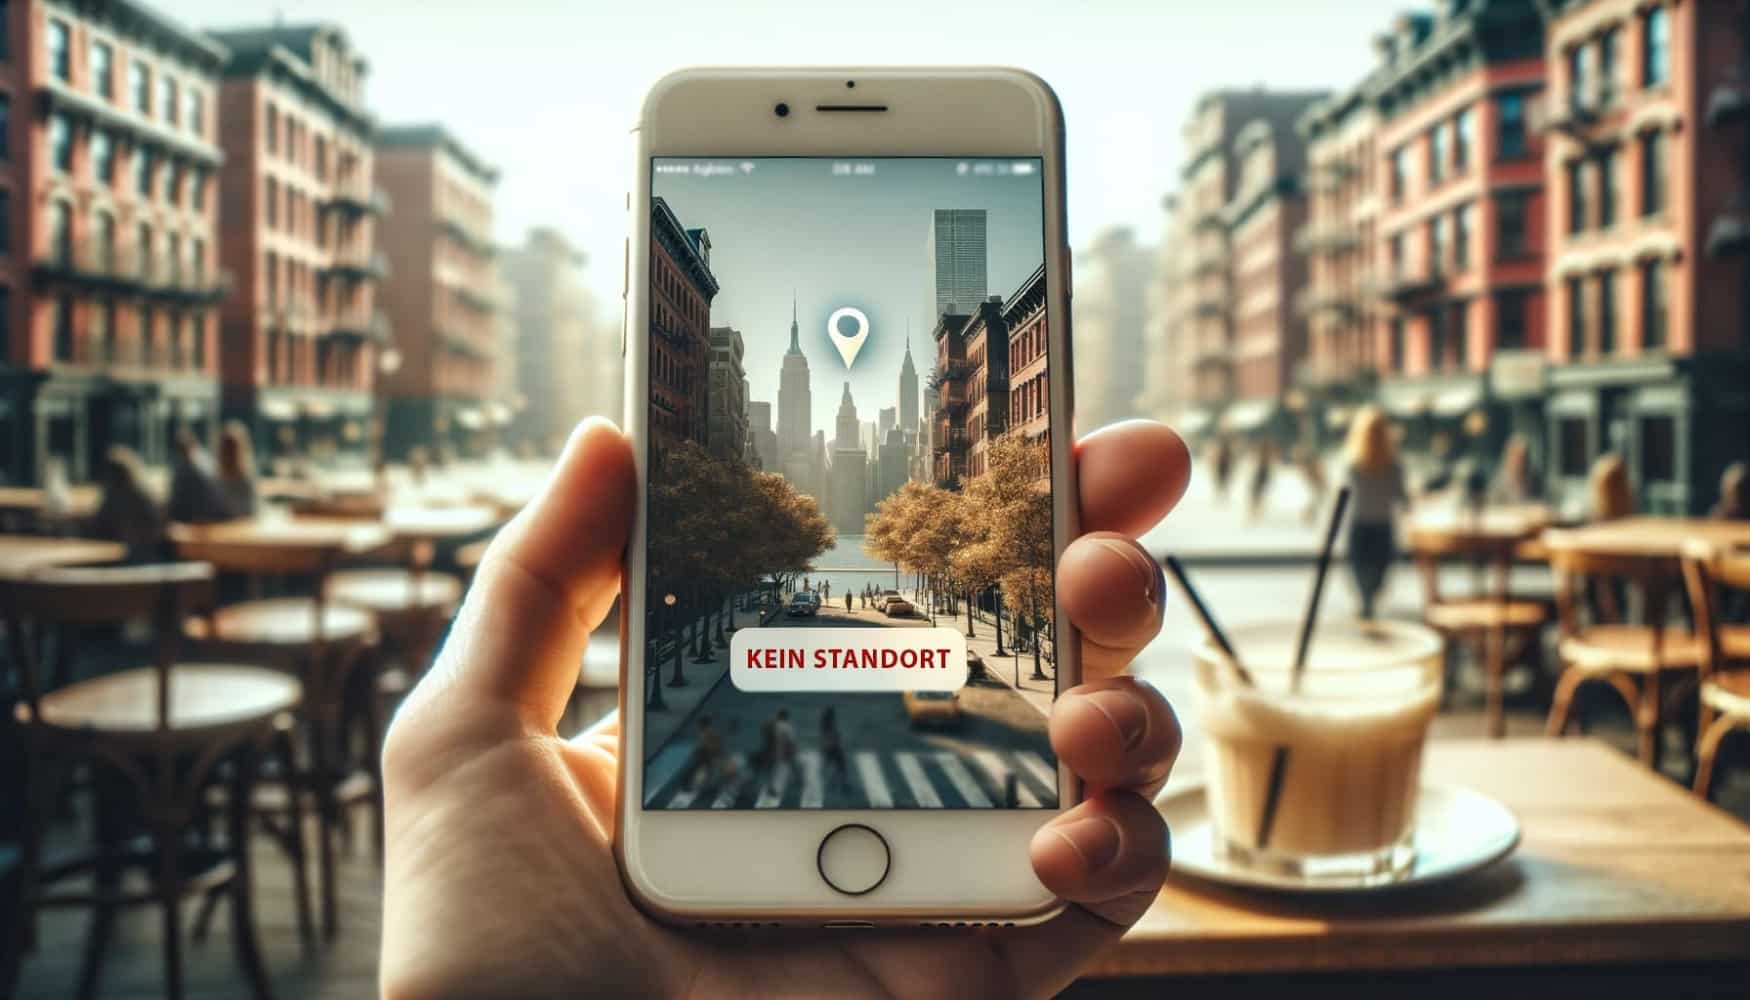 Vor dem Hintergrund der Stadt, der Häuser und der Cafétische hält ein Mann ein iPhone in der Hand, auf dem eine Straße mit Häusern zu sehen ist, mit einer Geolocation-Markierung und der Aufschrift No location